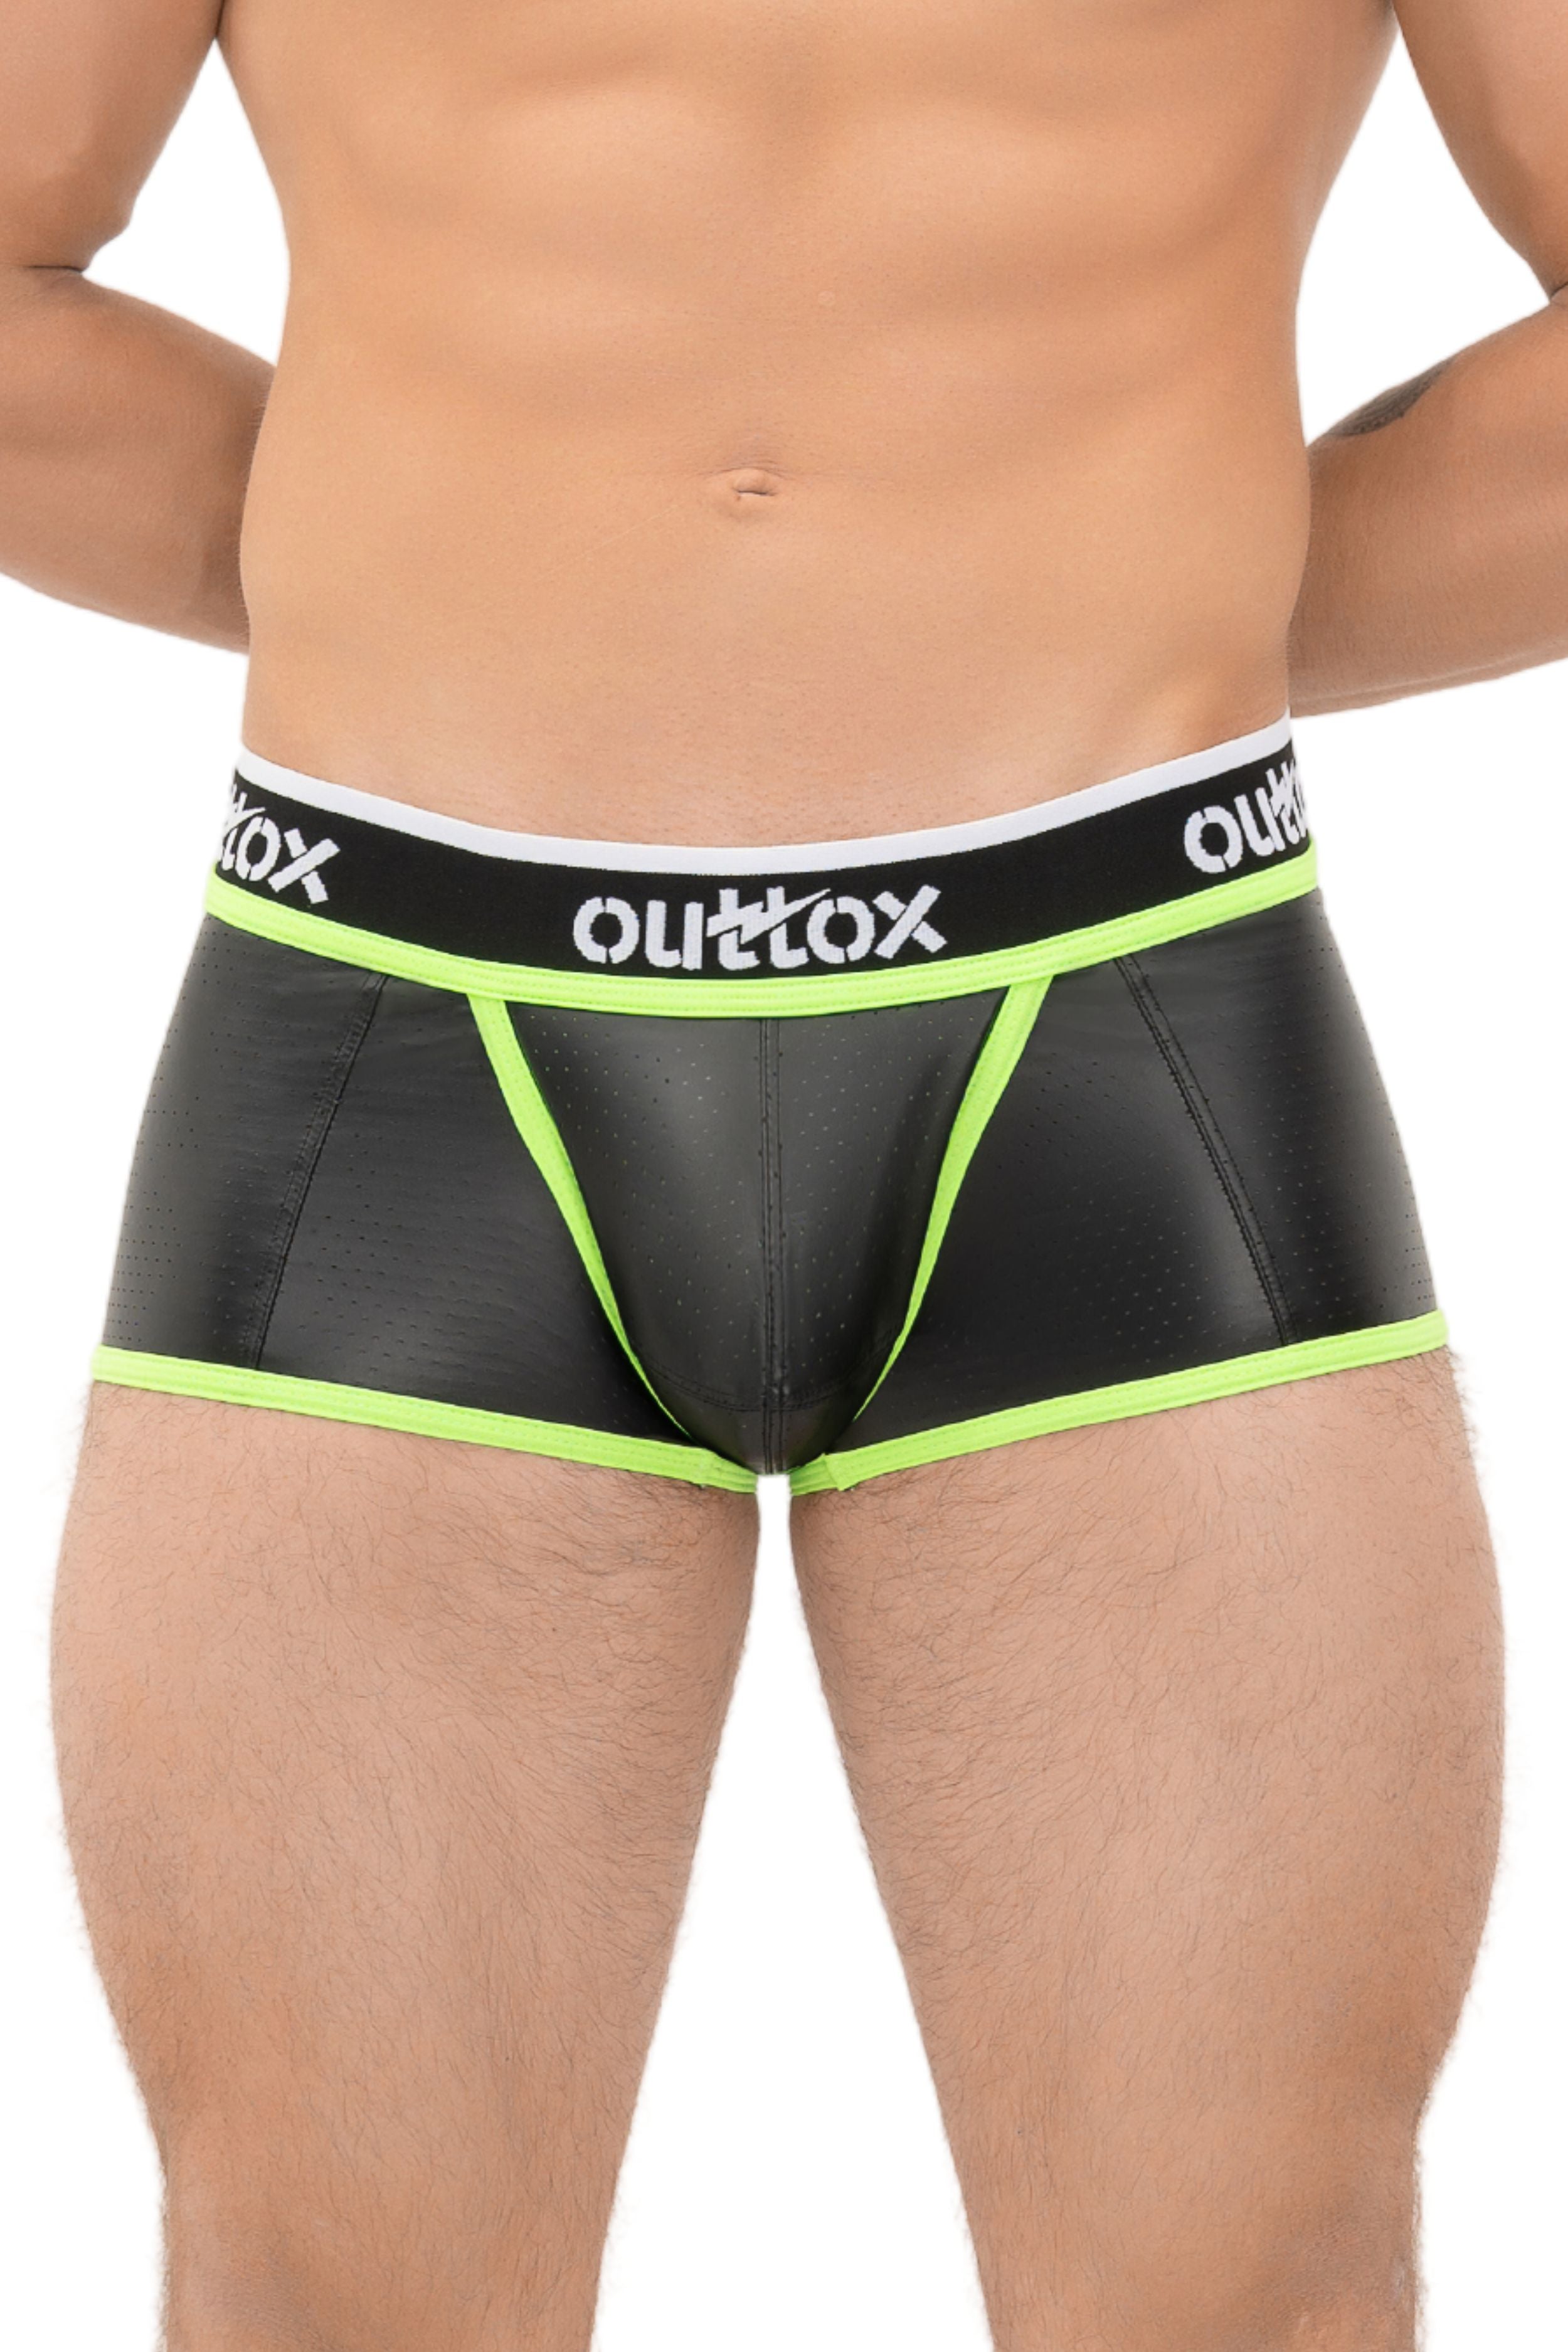 Outtox. Pantalones cortos traseros envueltos con bragueta a presión. Negro+Verde &